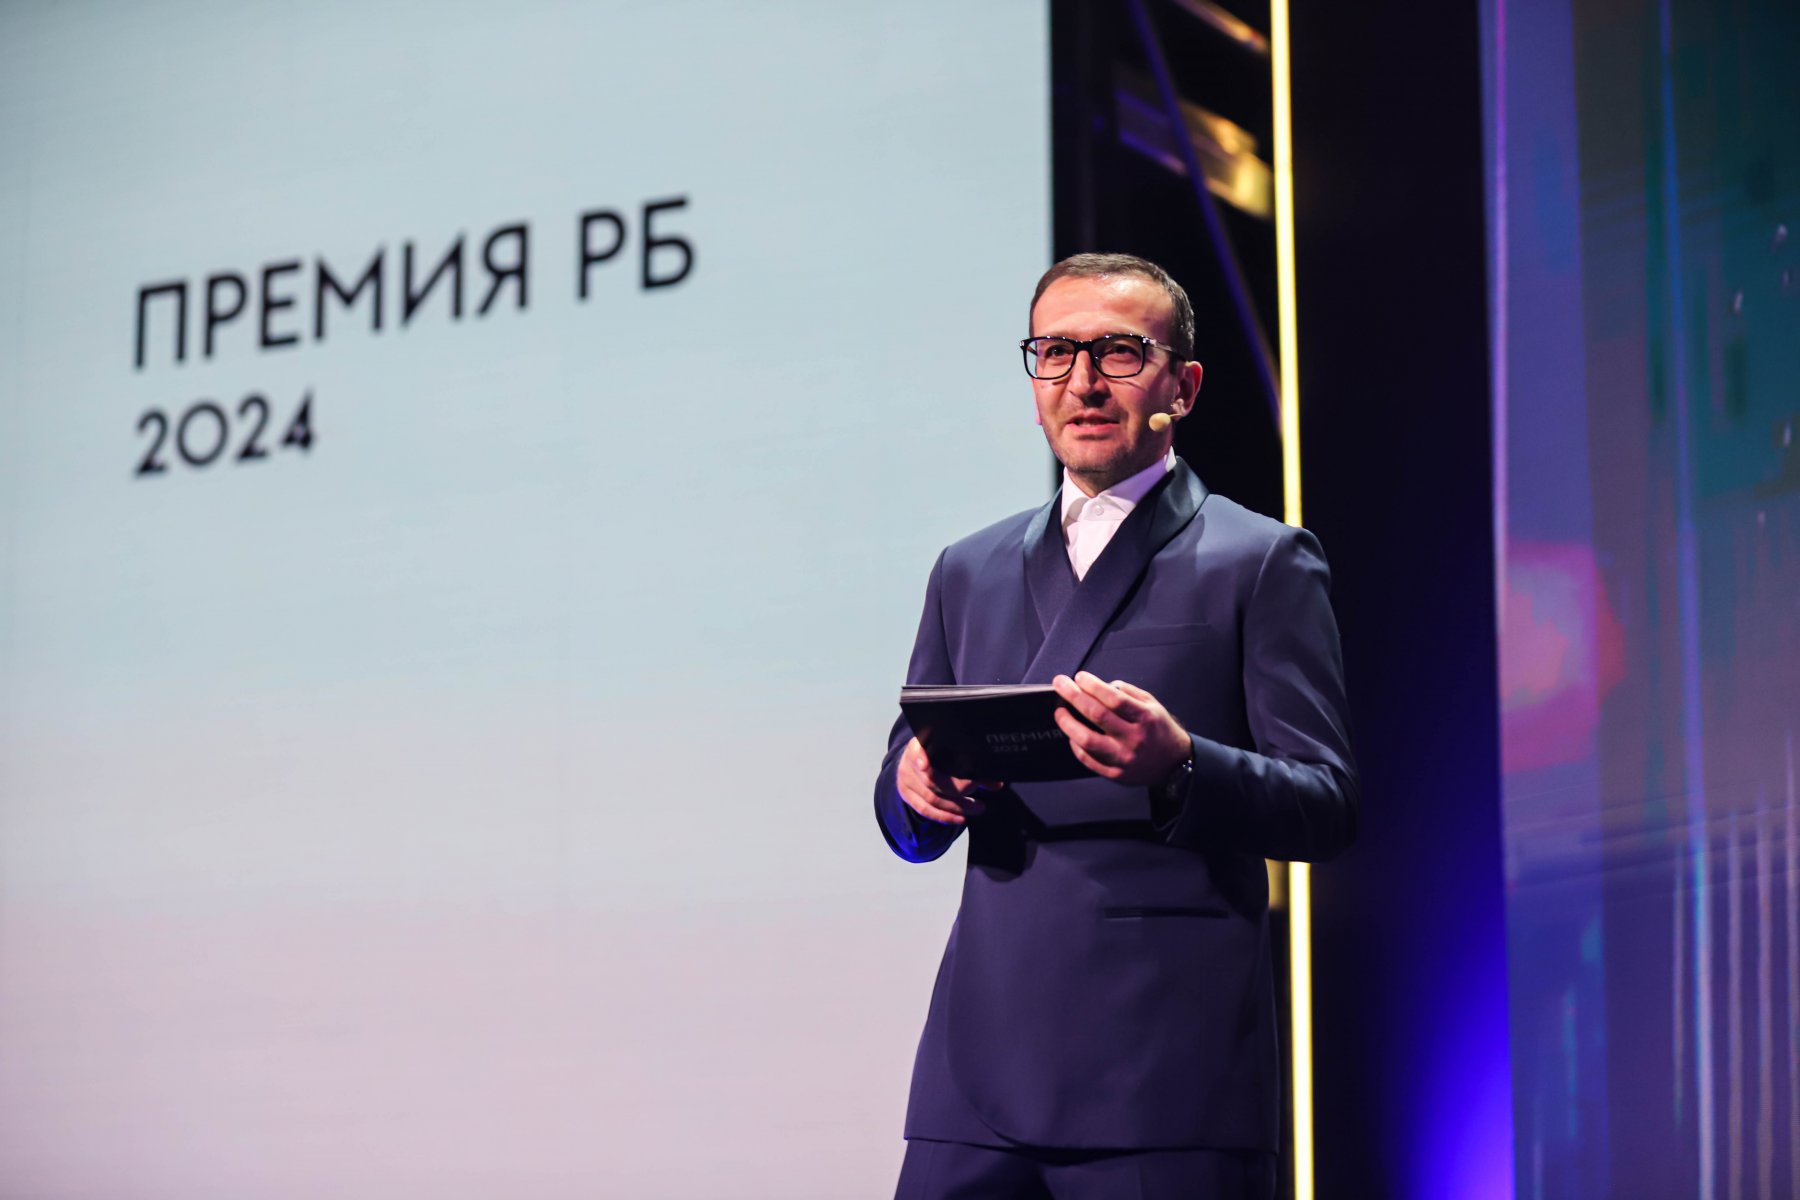 В Москве состоялась церемония вручения Премии РБ 2024